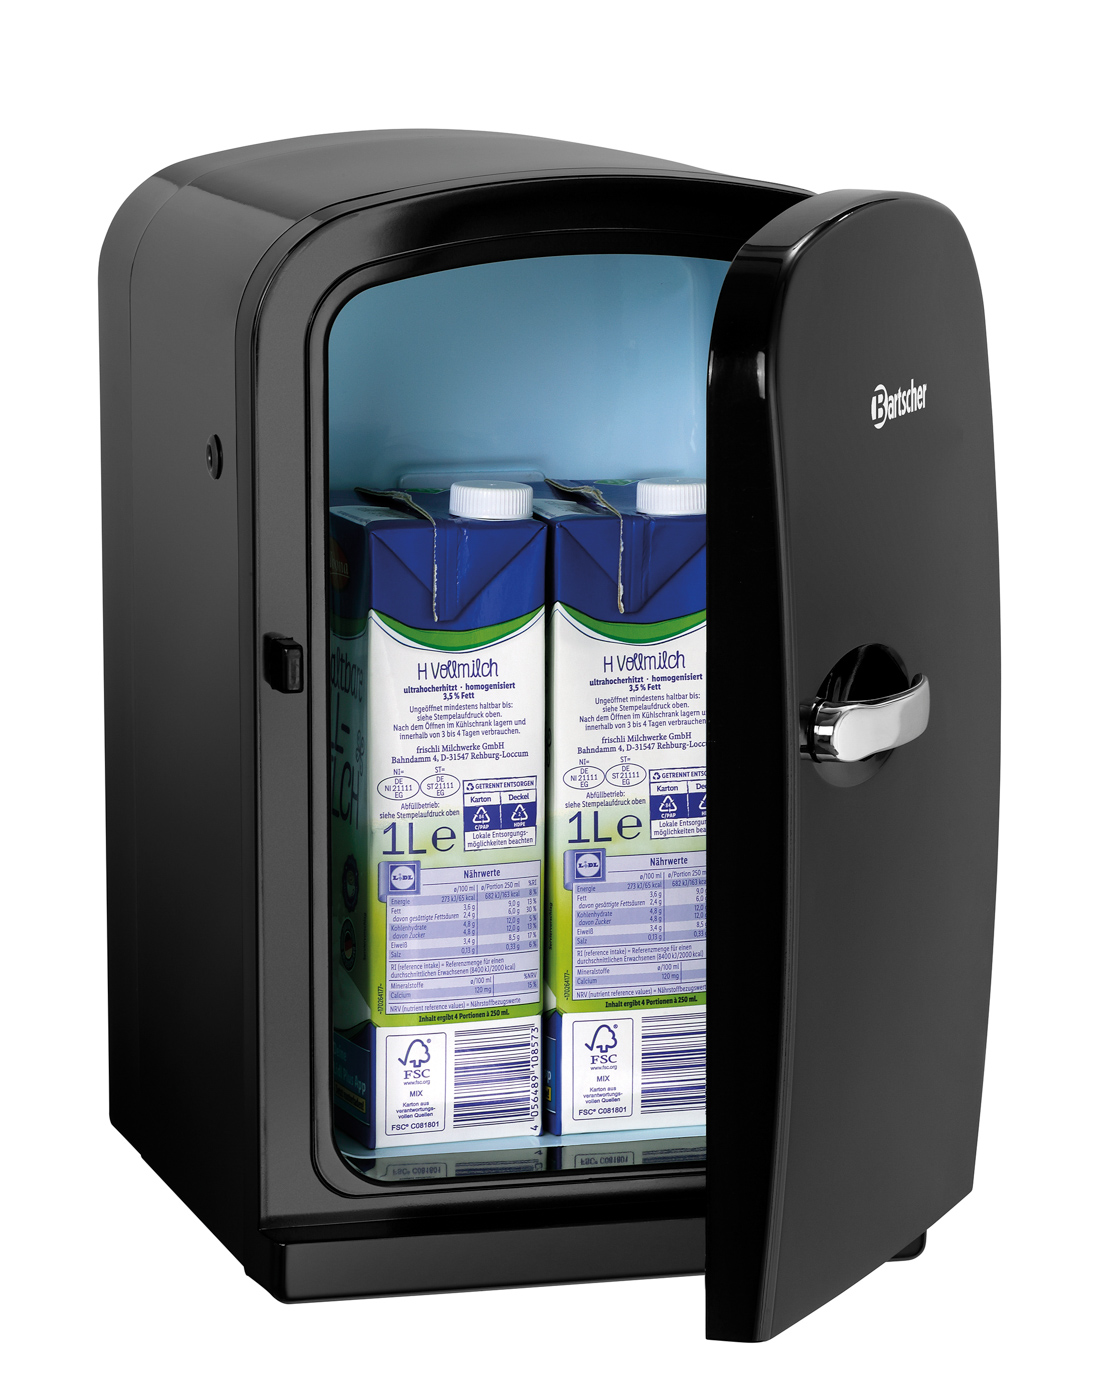 Bartscher Milchkühlschrank KV6LTE | Kühlleistung: 12 °C bis 15 °C unter Umgebungstemperatur | Maße: 22 x 27 x 350 cm. Gewicht: 3 kg